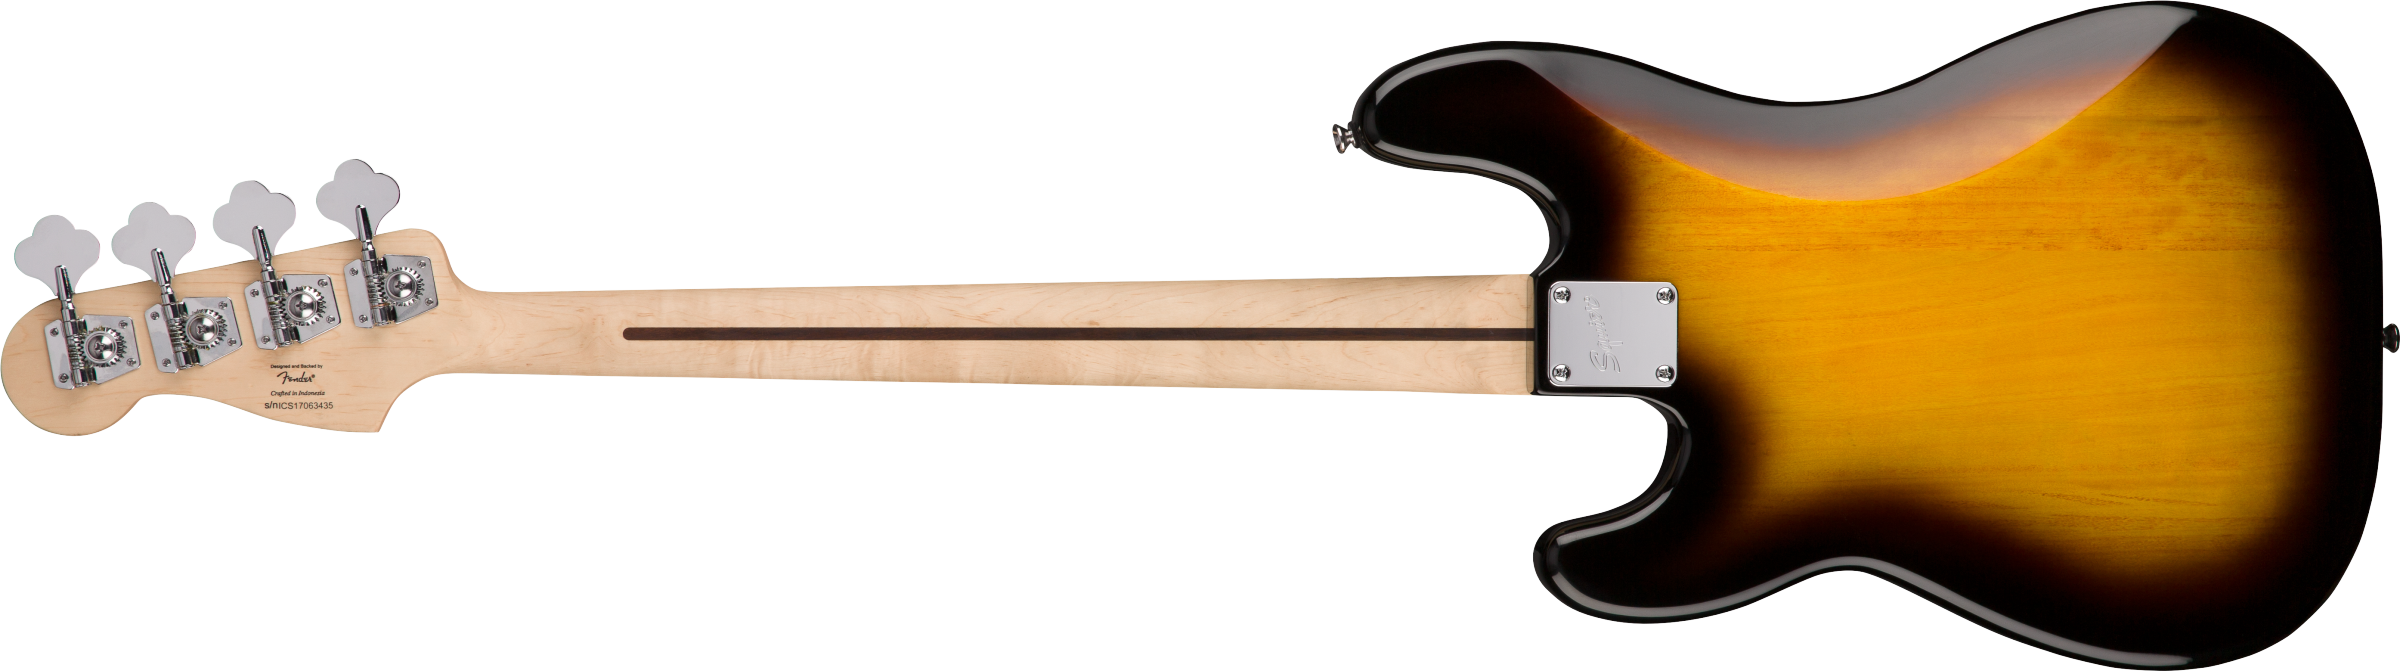 Squier Affinity Precision Bass PJ Pack w Rumble 15 Amplifier Sunburst